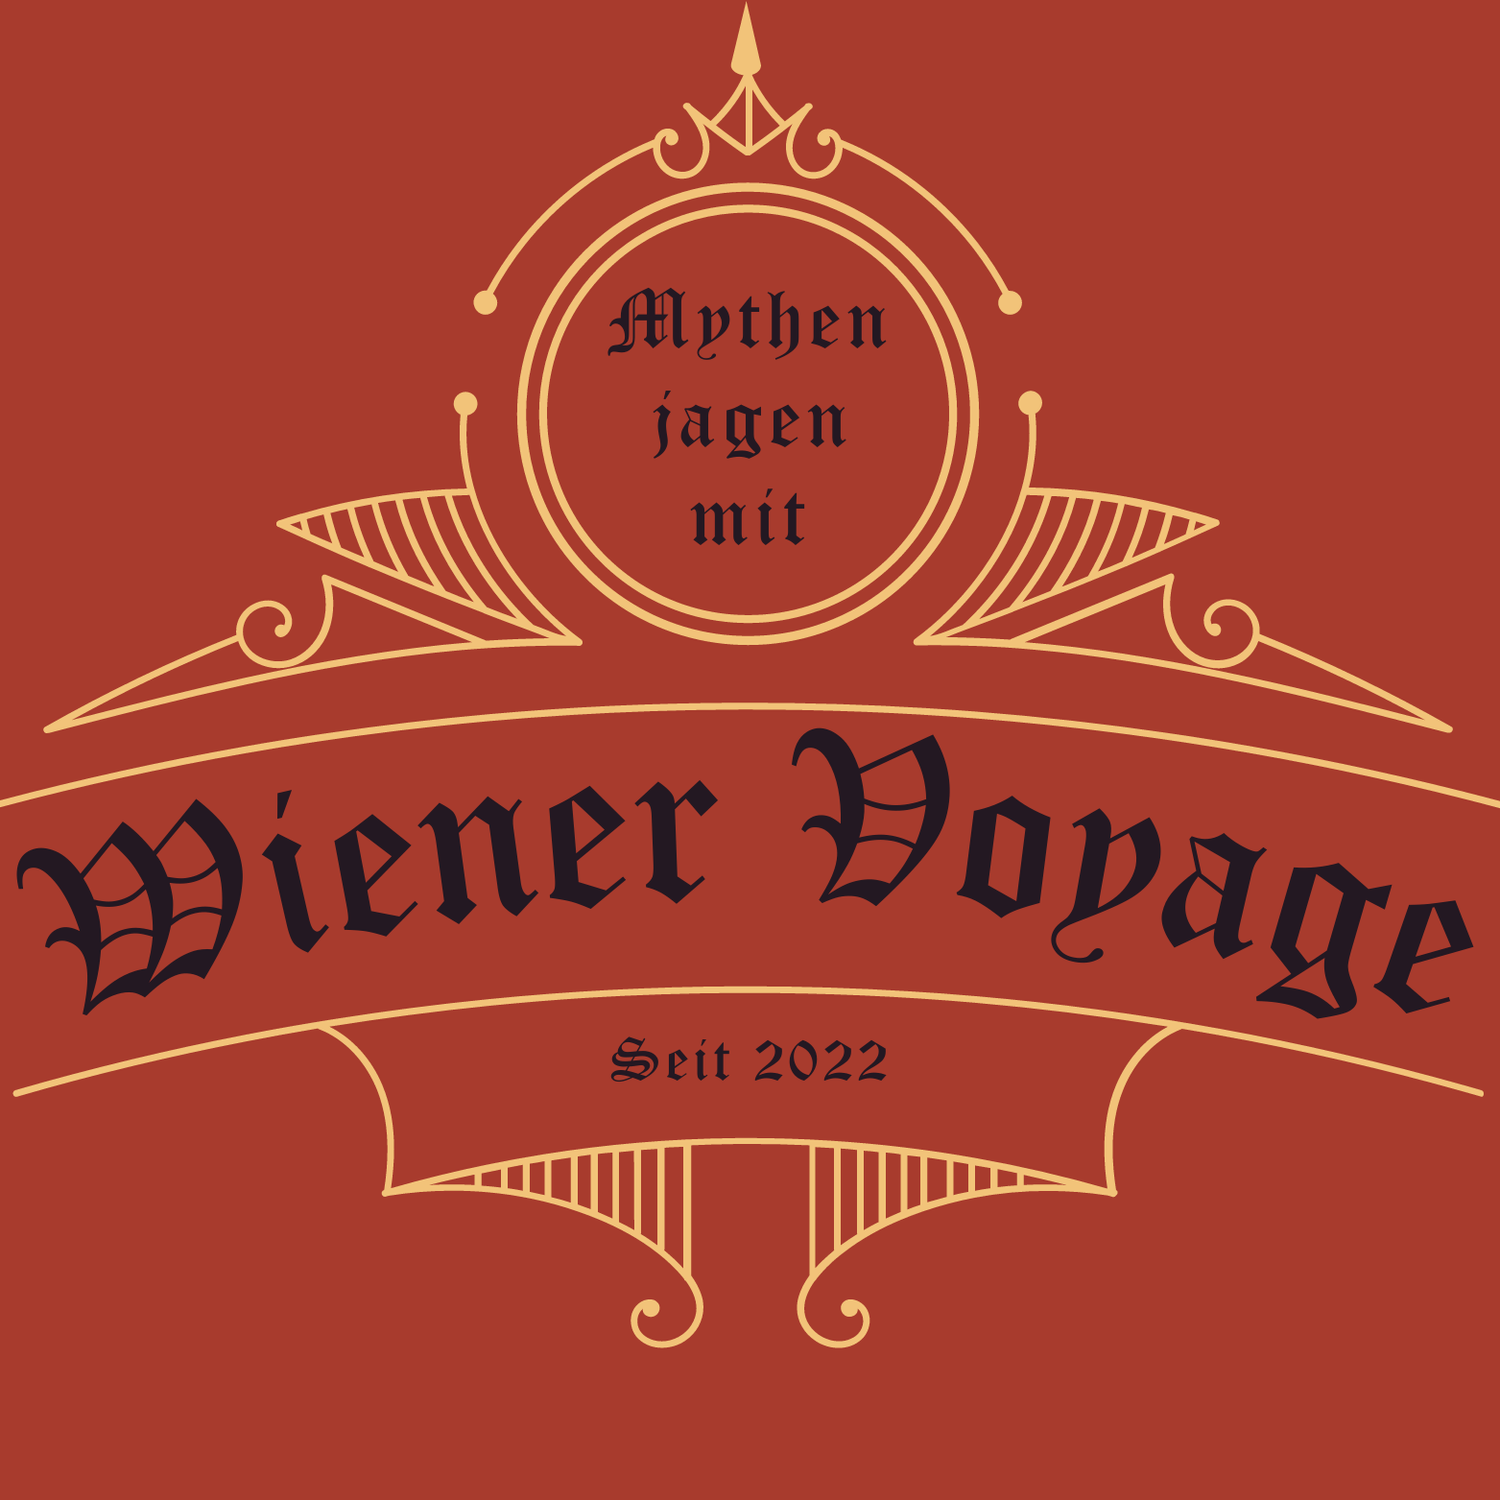 Wiener Voyage Mythenjagd